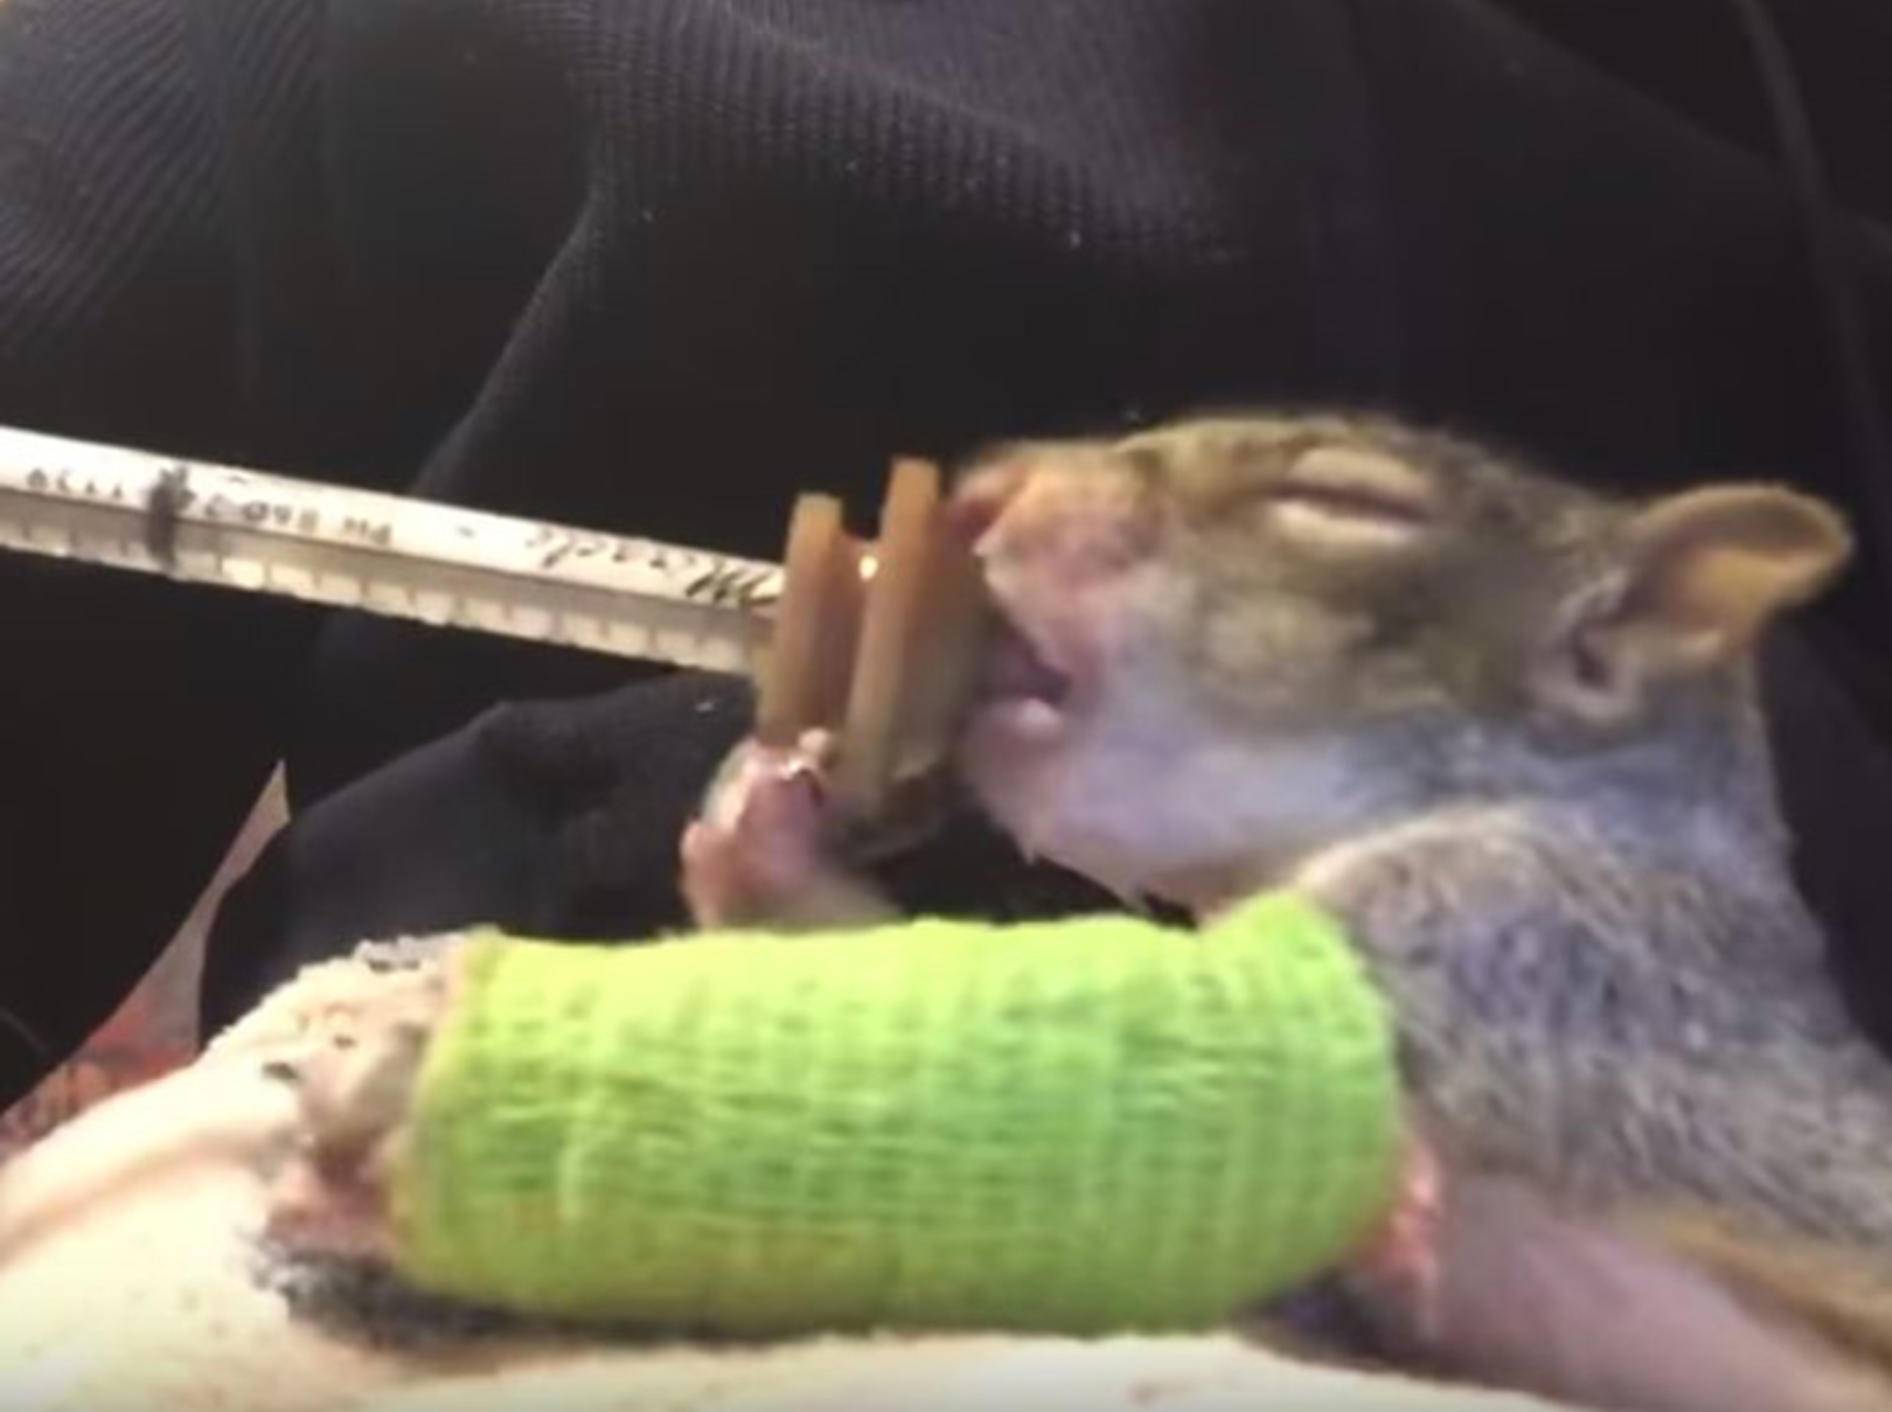 Ein Eichhörnchen im grünen Gips begeistert das Netz - Bild: YouTube / Orphaned Wildlife Center